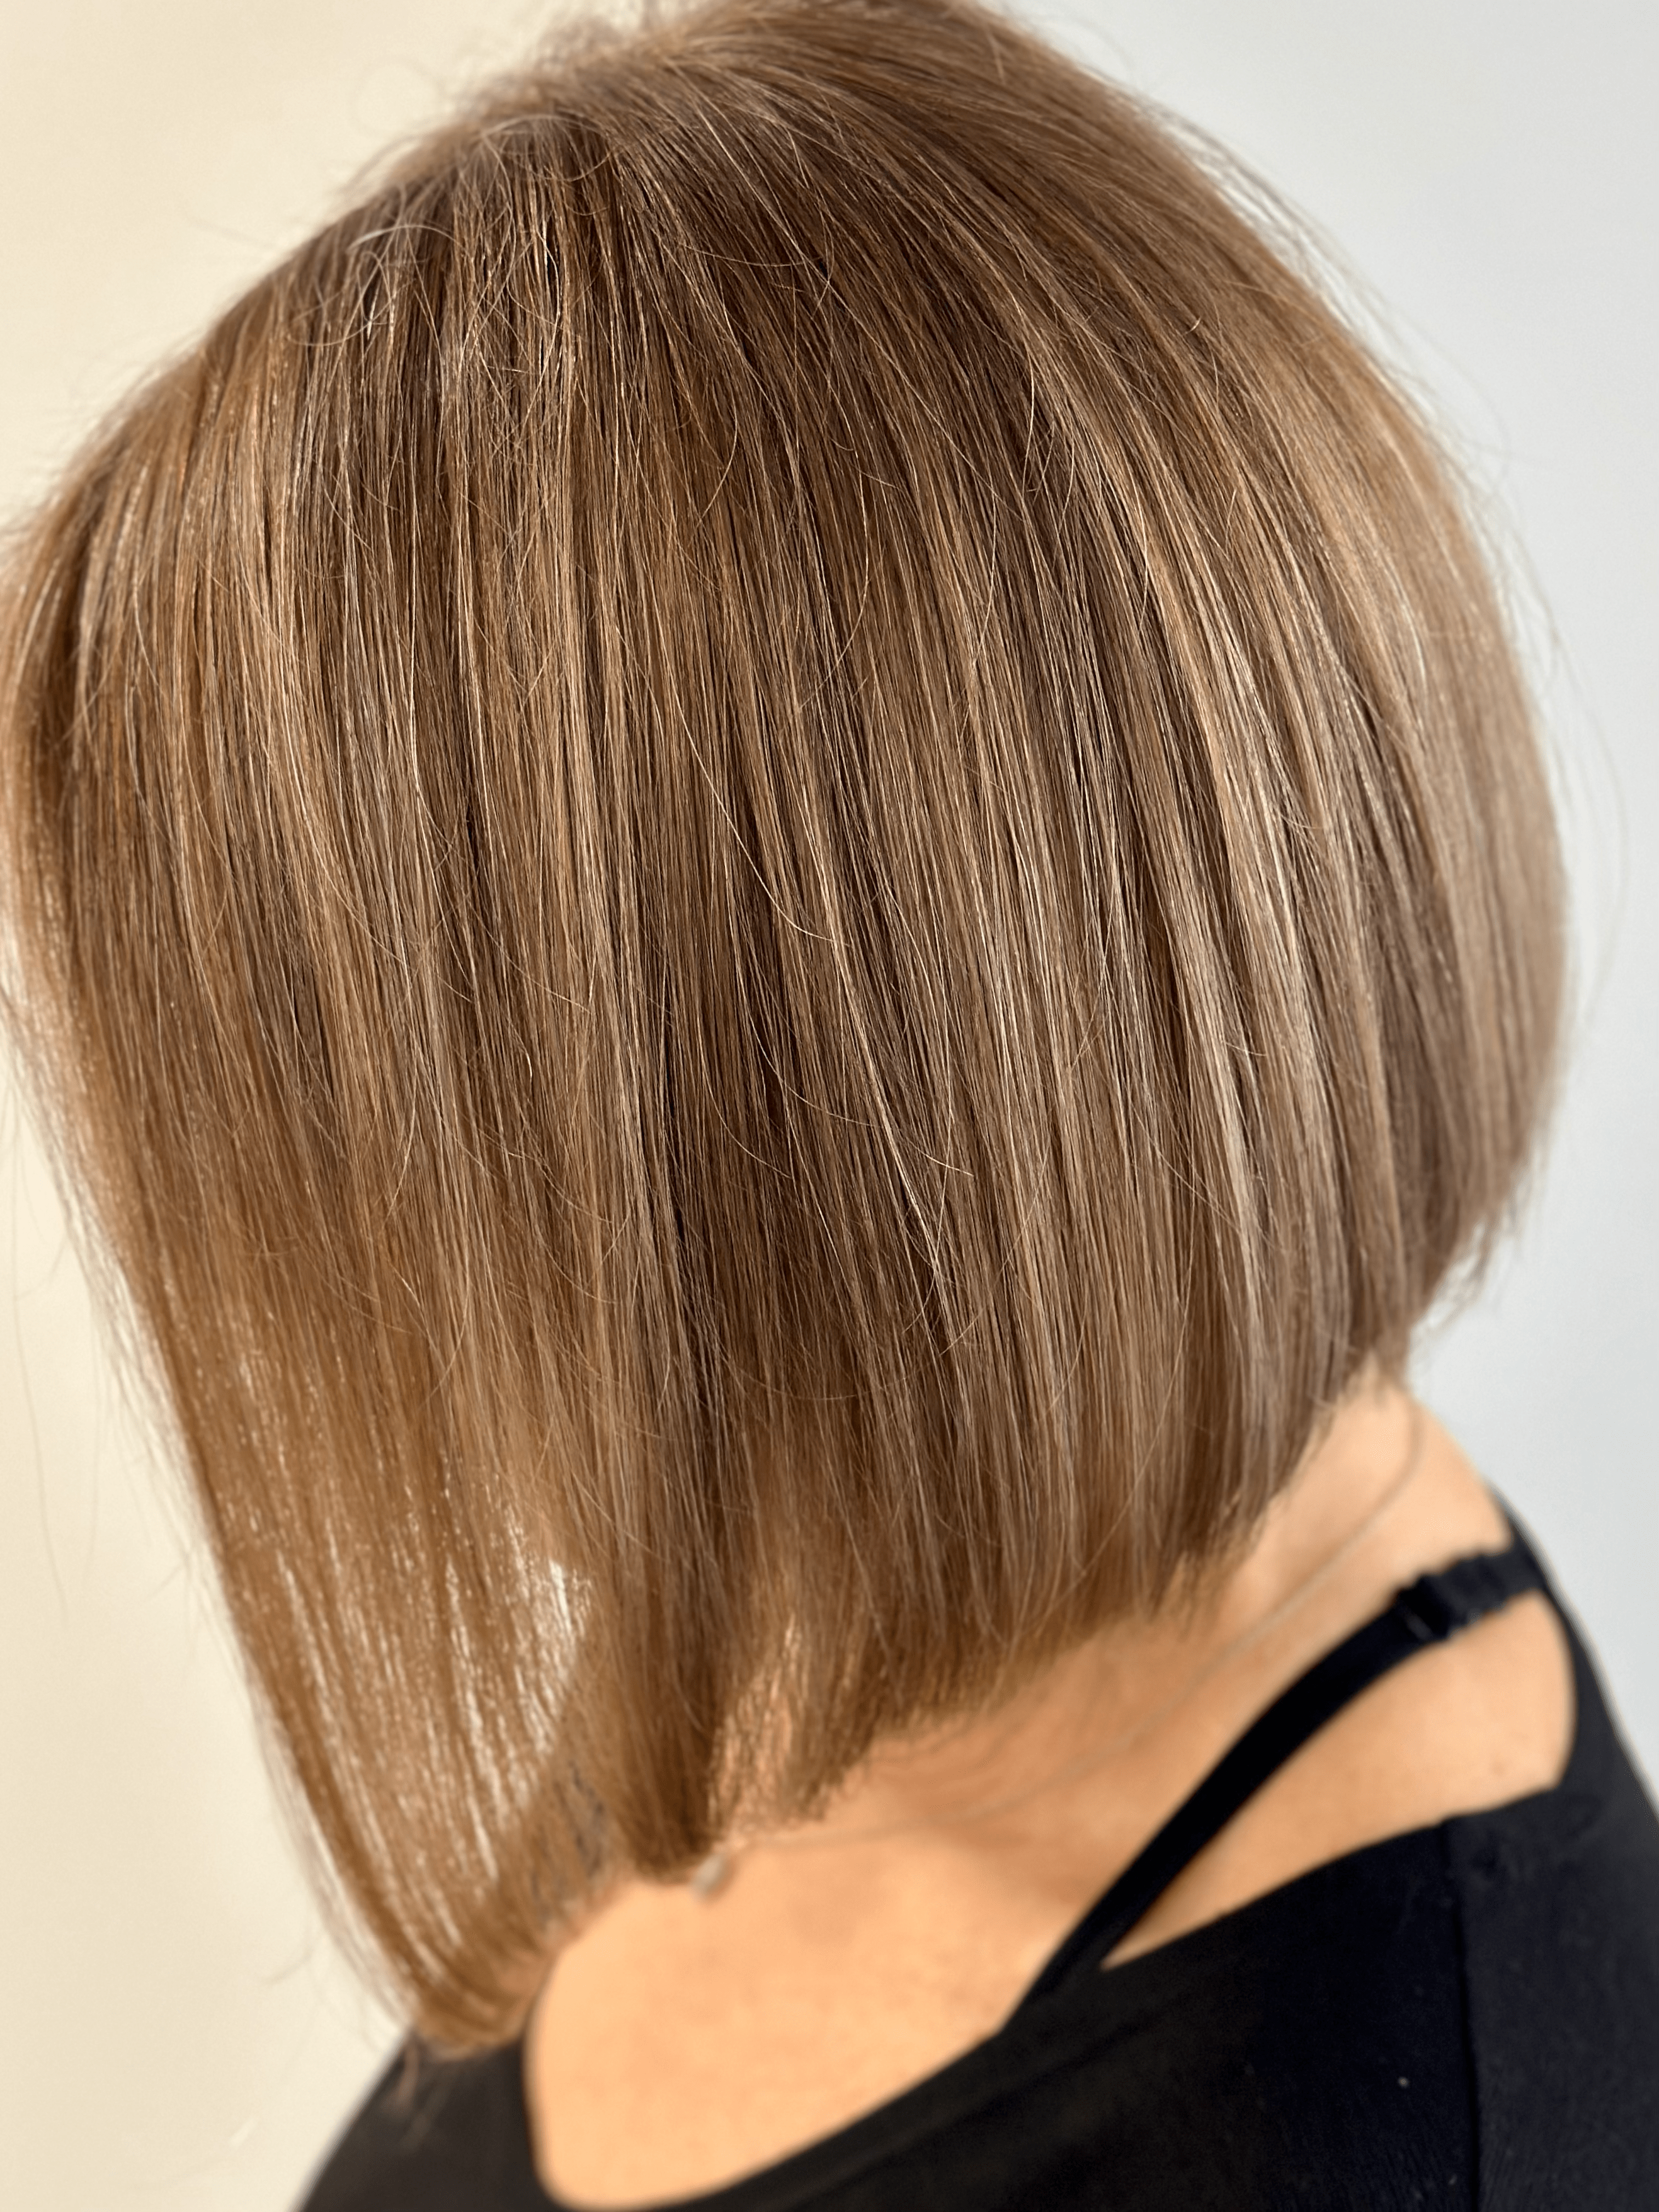 Bob hair cut & hair color - Salon Dedham - Hair By Marianne Hair Salon in Dedham MA